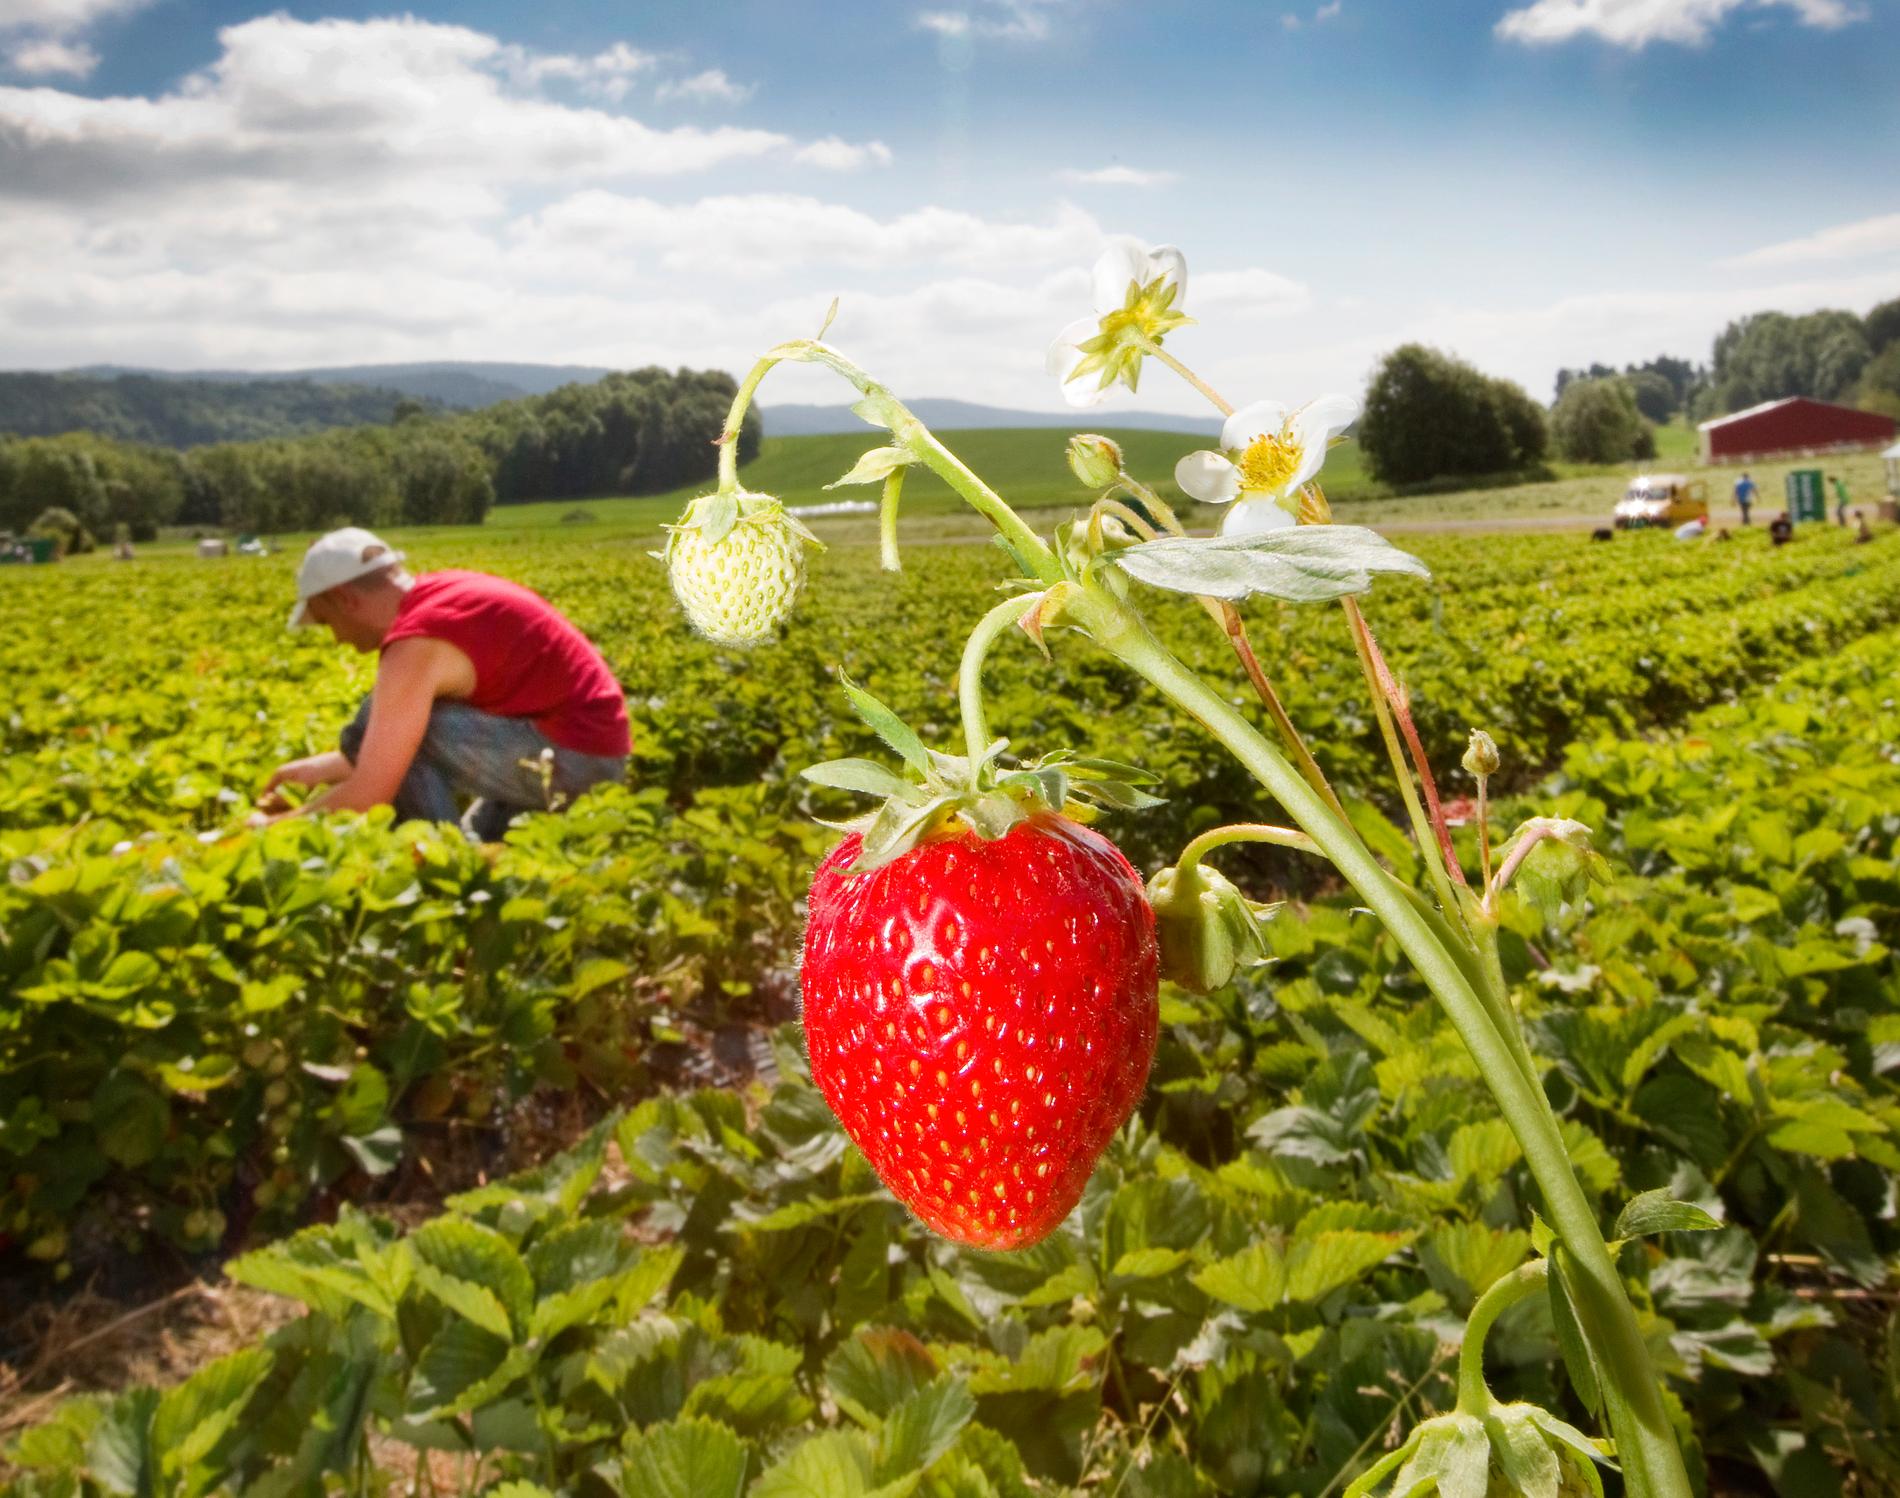 Regeringen gör undantag i inreseförbudet för säsongsarbetare bland annat för att det ska kunna finnas jordgubbar i midsommar enligt finansmarknadsminister Per Bolund (MP). Arkivbild.